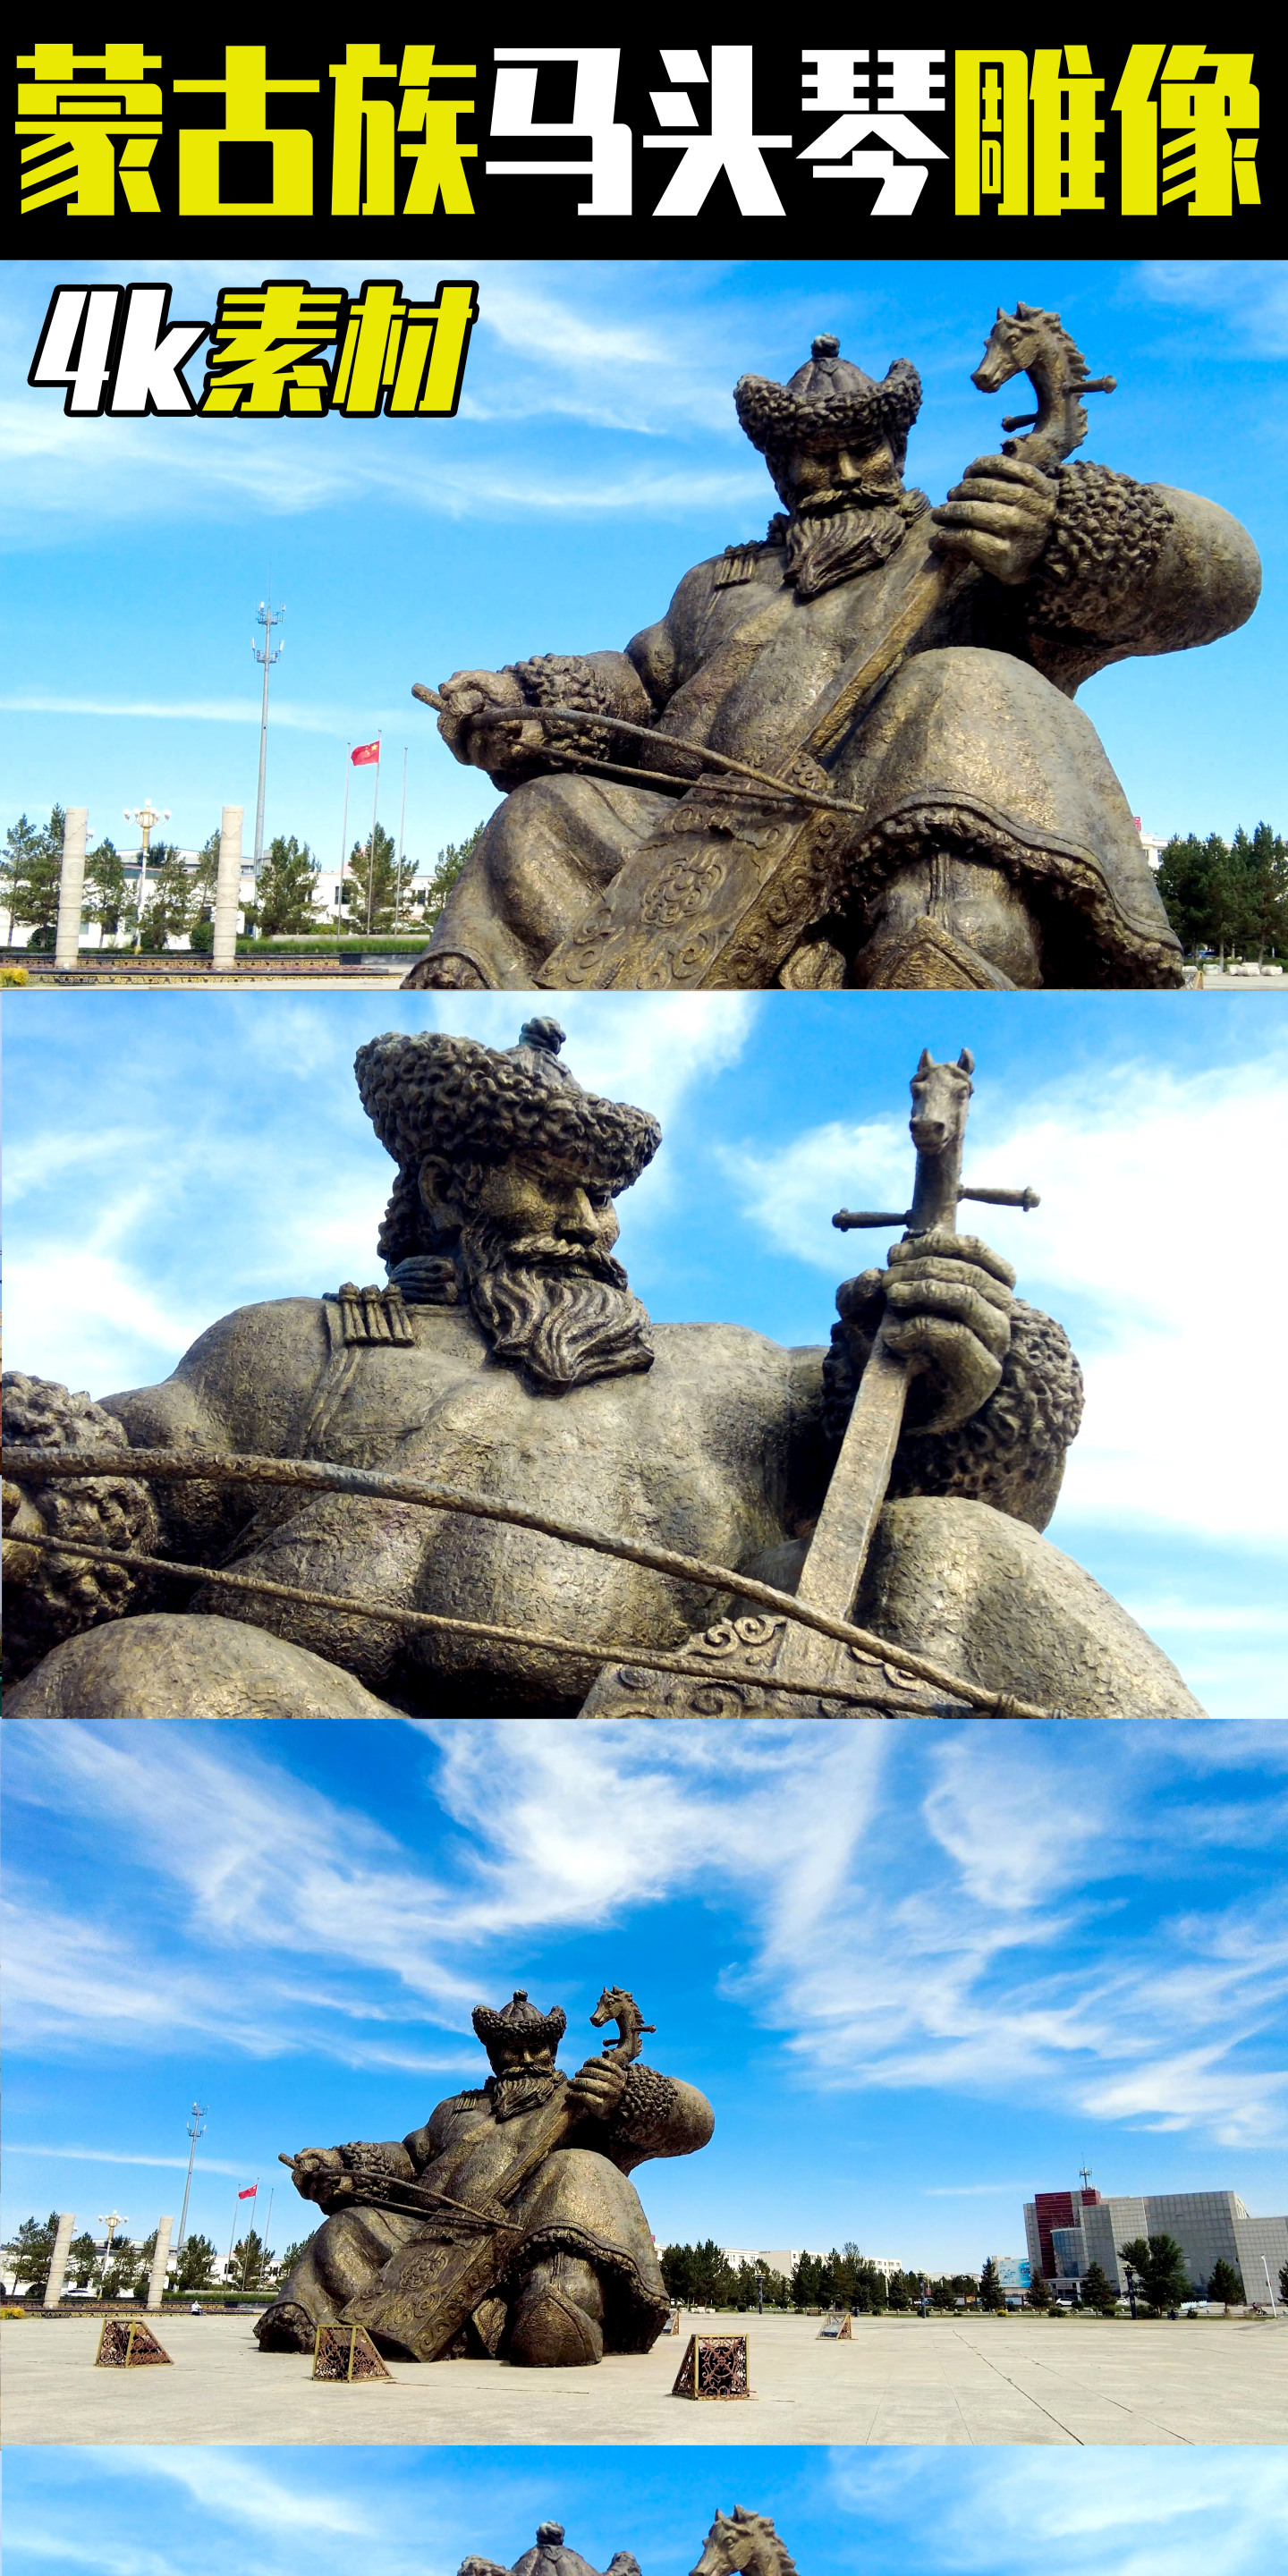 4k拍摄内蒙古广场上的蒙古族马头琴雕塑